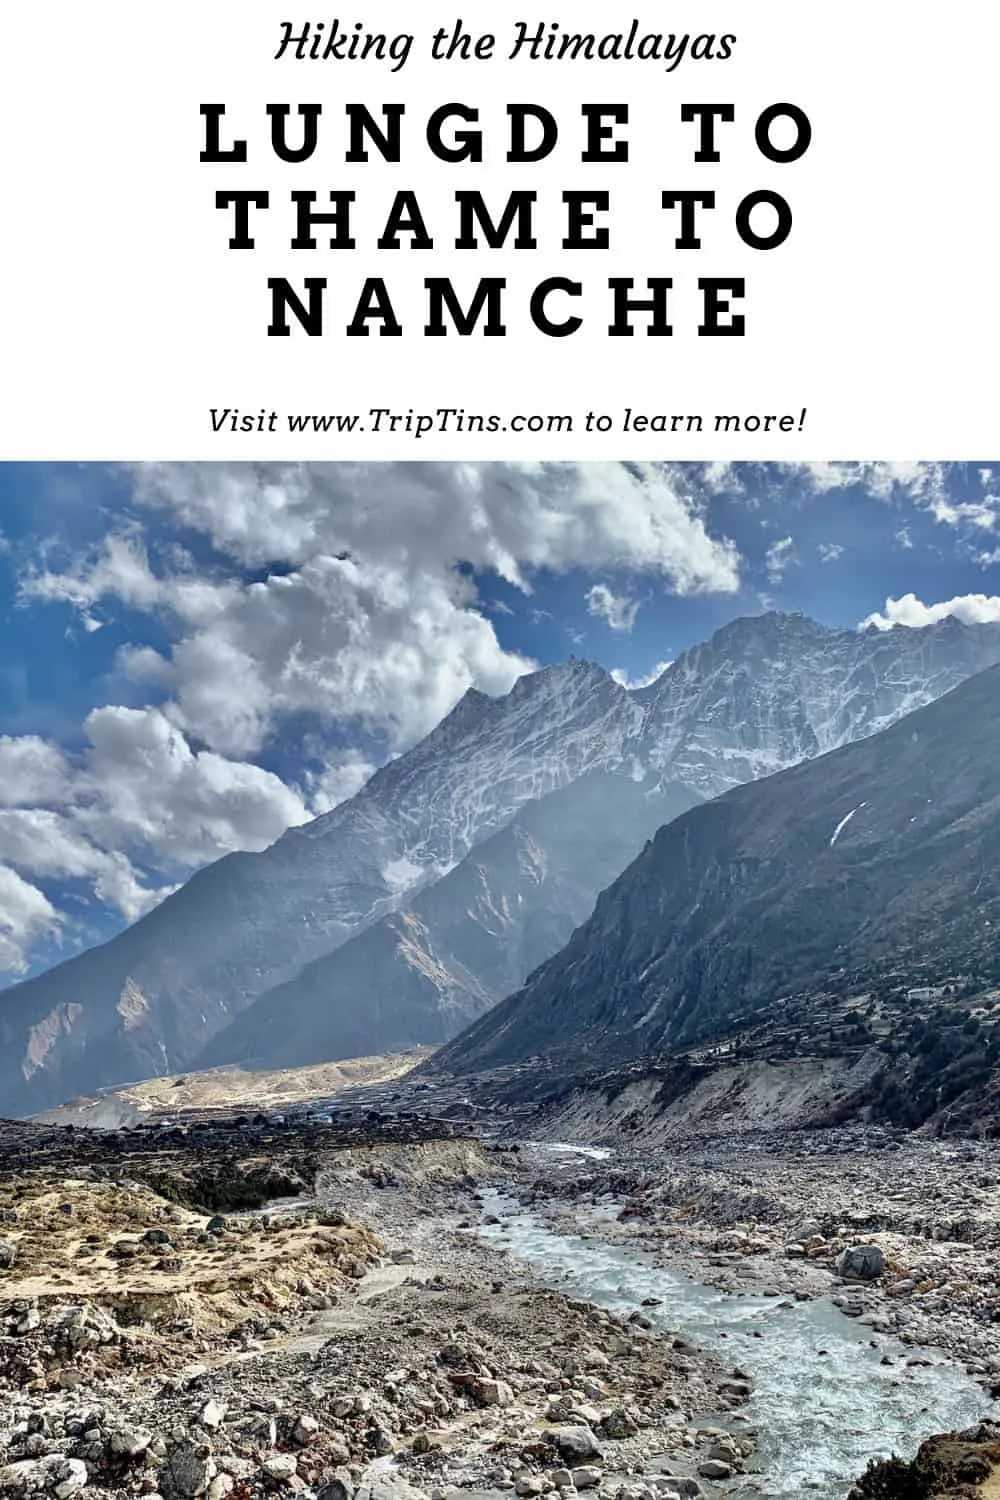 Thame Nepal Trek